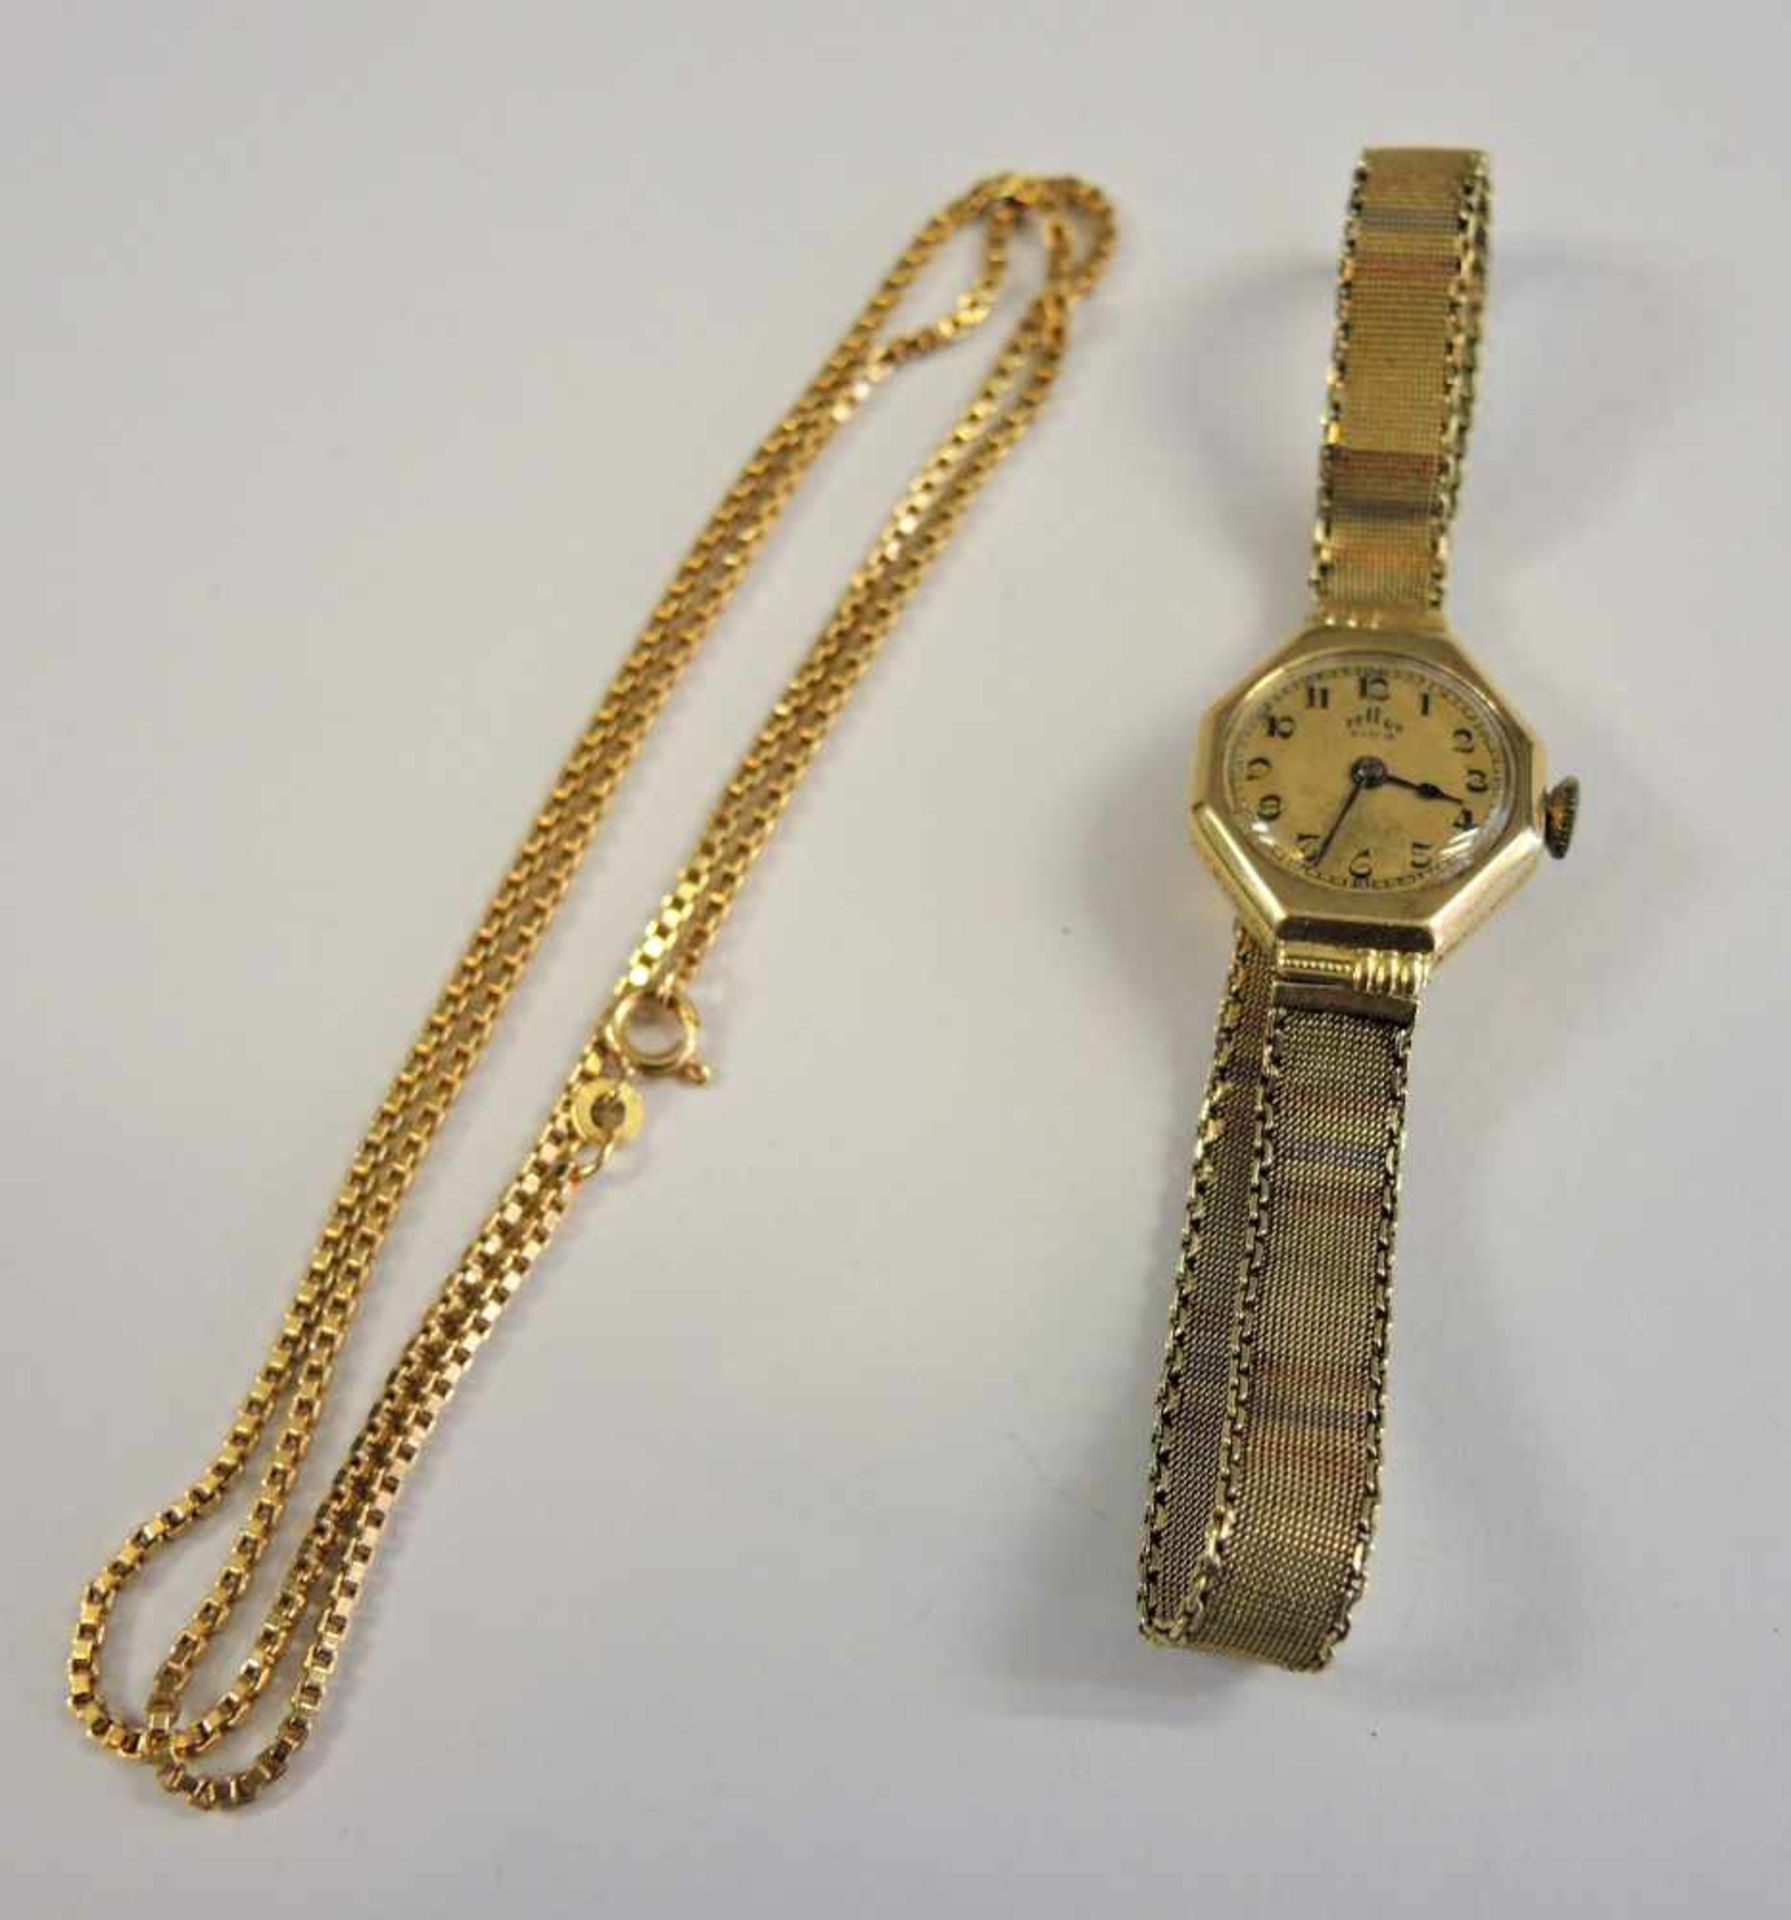 Goldkette und DamenuhrUhr der Marke Telus Extra in 14 K. Gelbgold, Gewicht 20 g. Halskette in 18